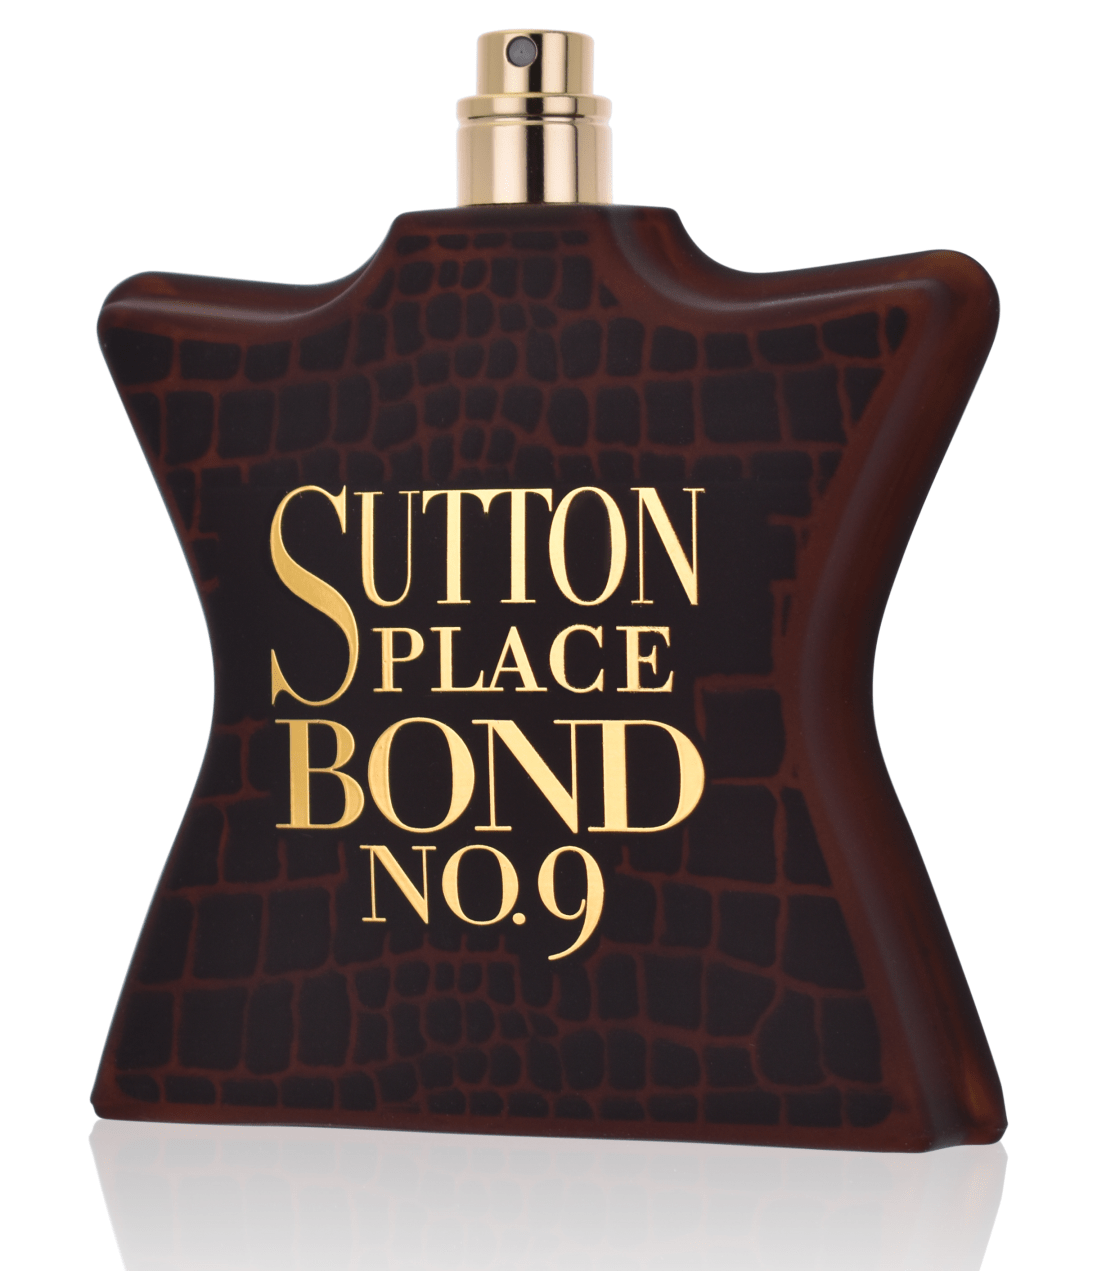 Bond No.9 Sutton Place 100 ml Eau de Parfum Tester   